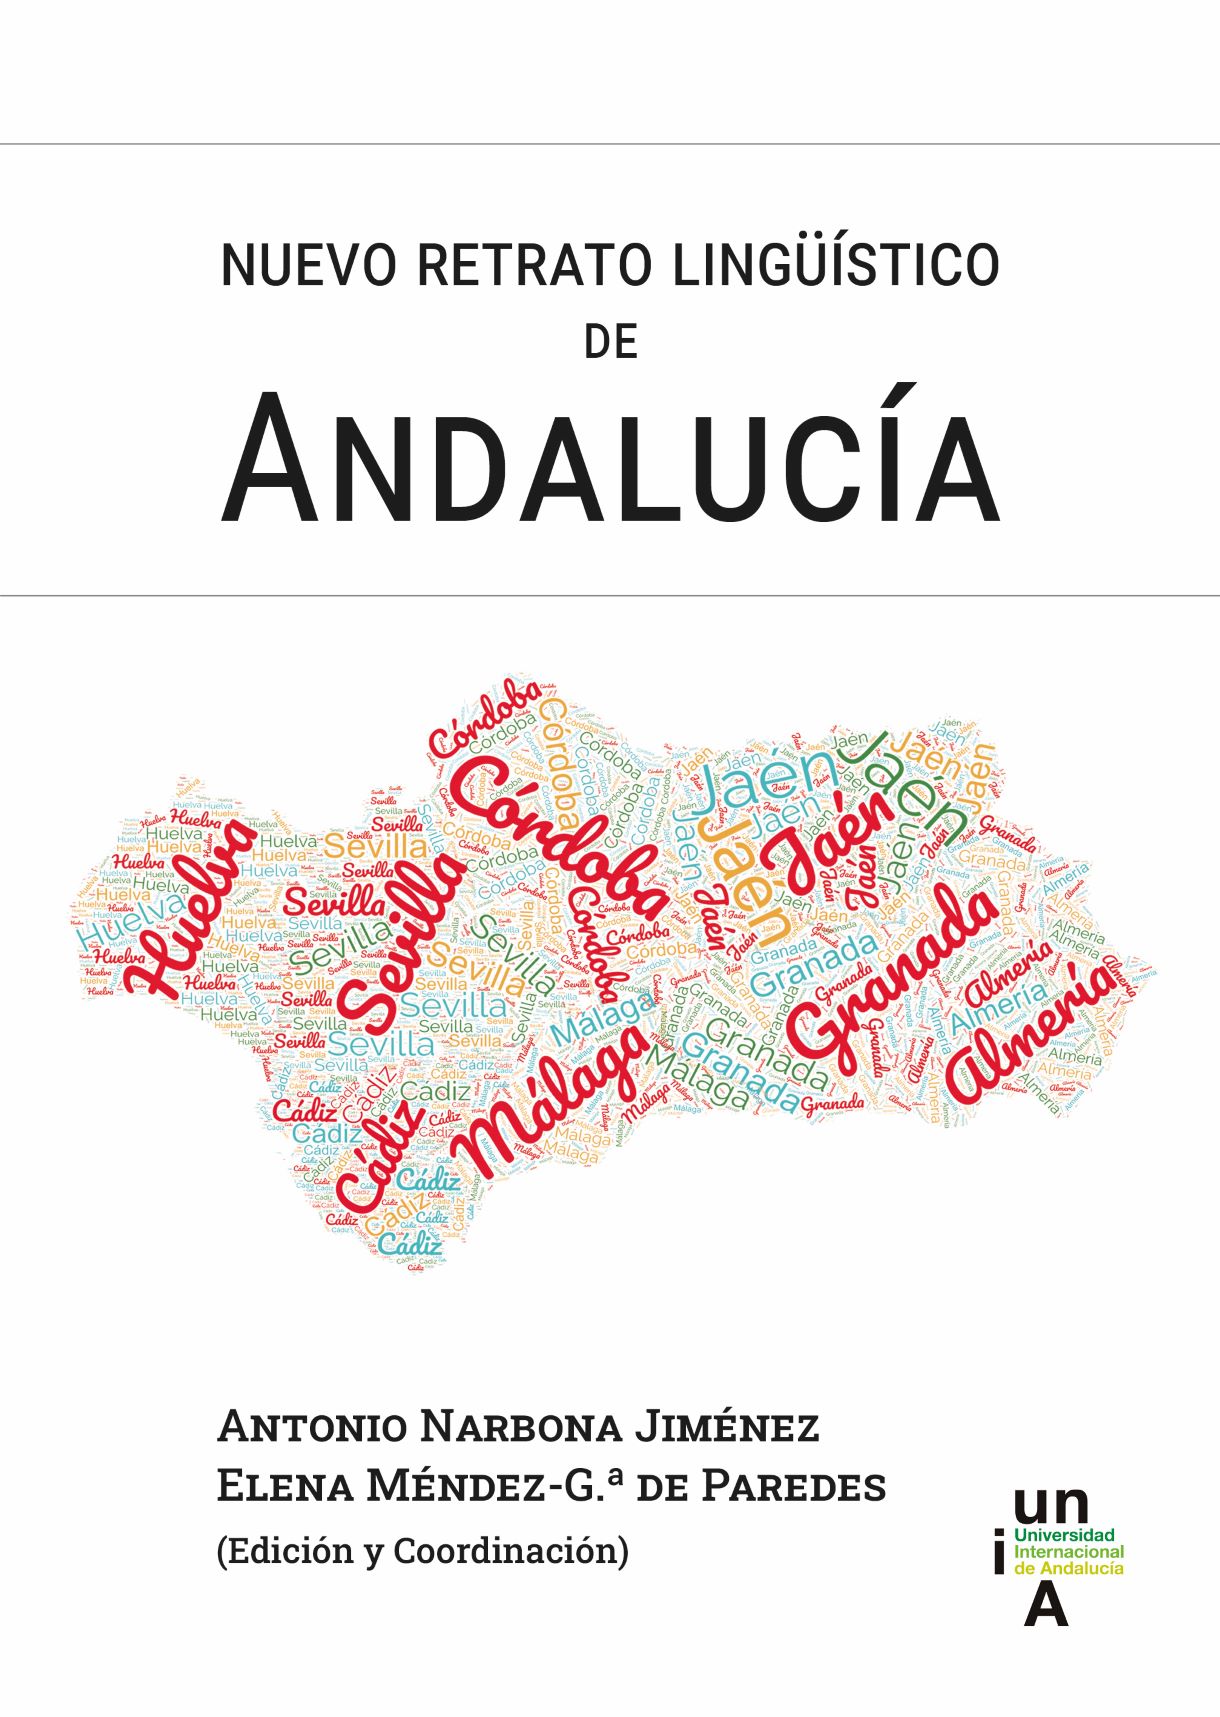 Nuevo retrato lingüístico de Andalucía